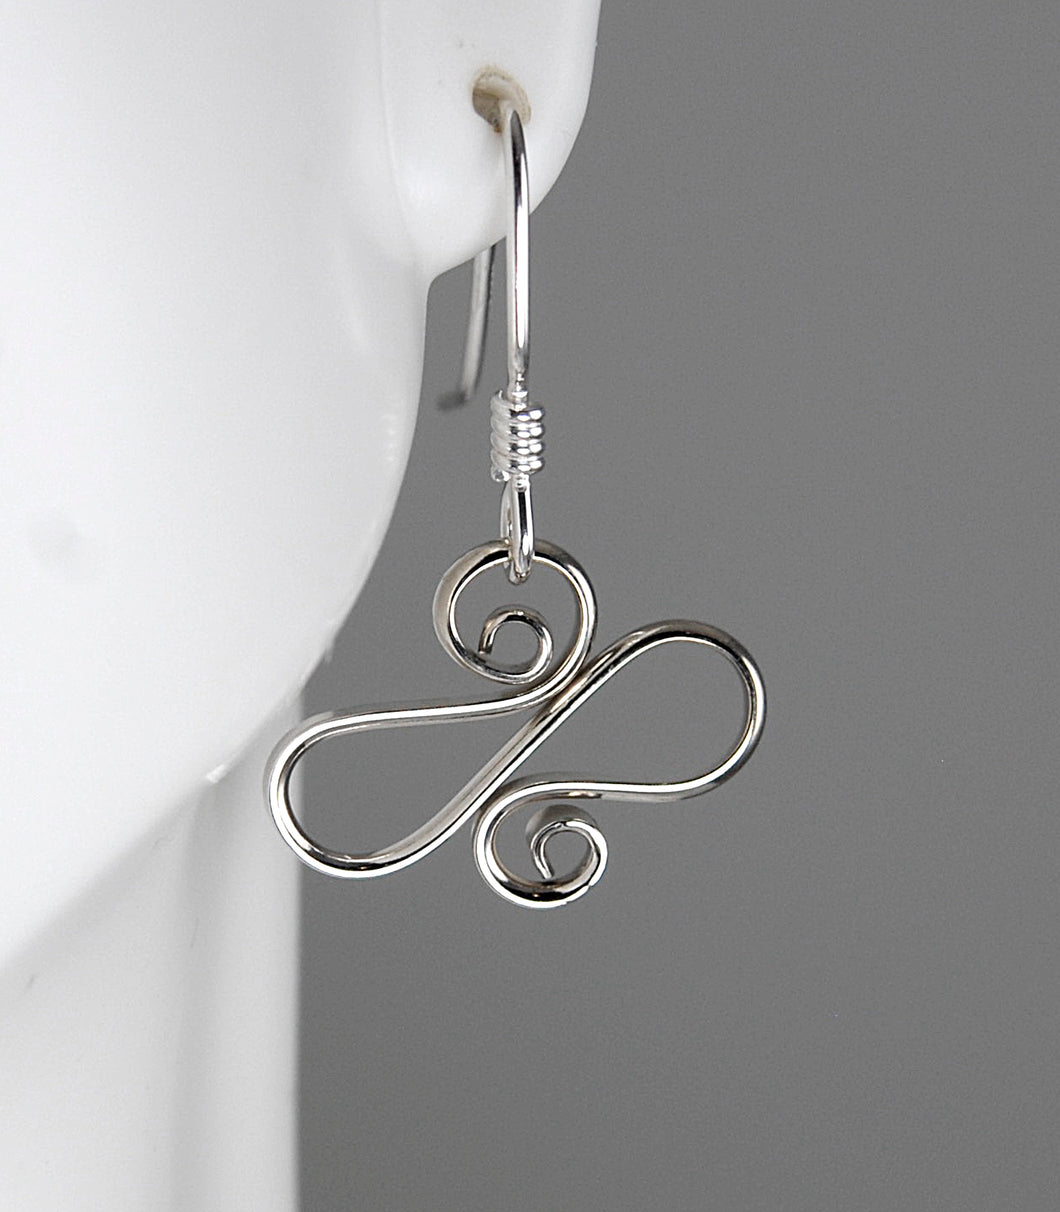 Shiny Argentium Silver Wavy Spiral Earrings, SE10, Lois Linn Jewelry